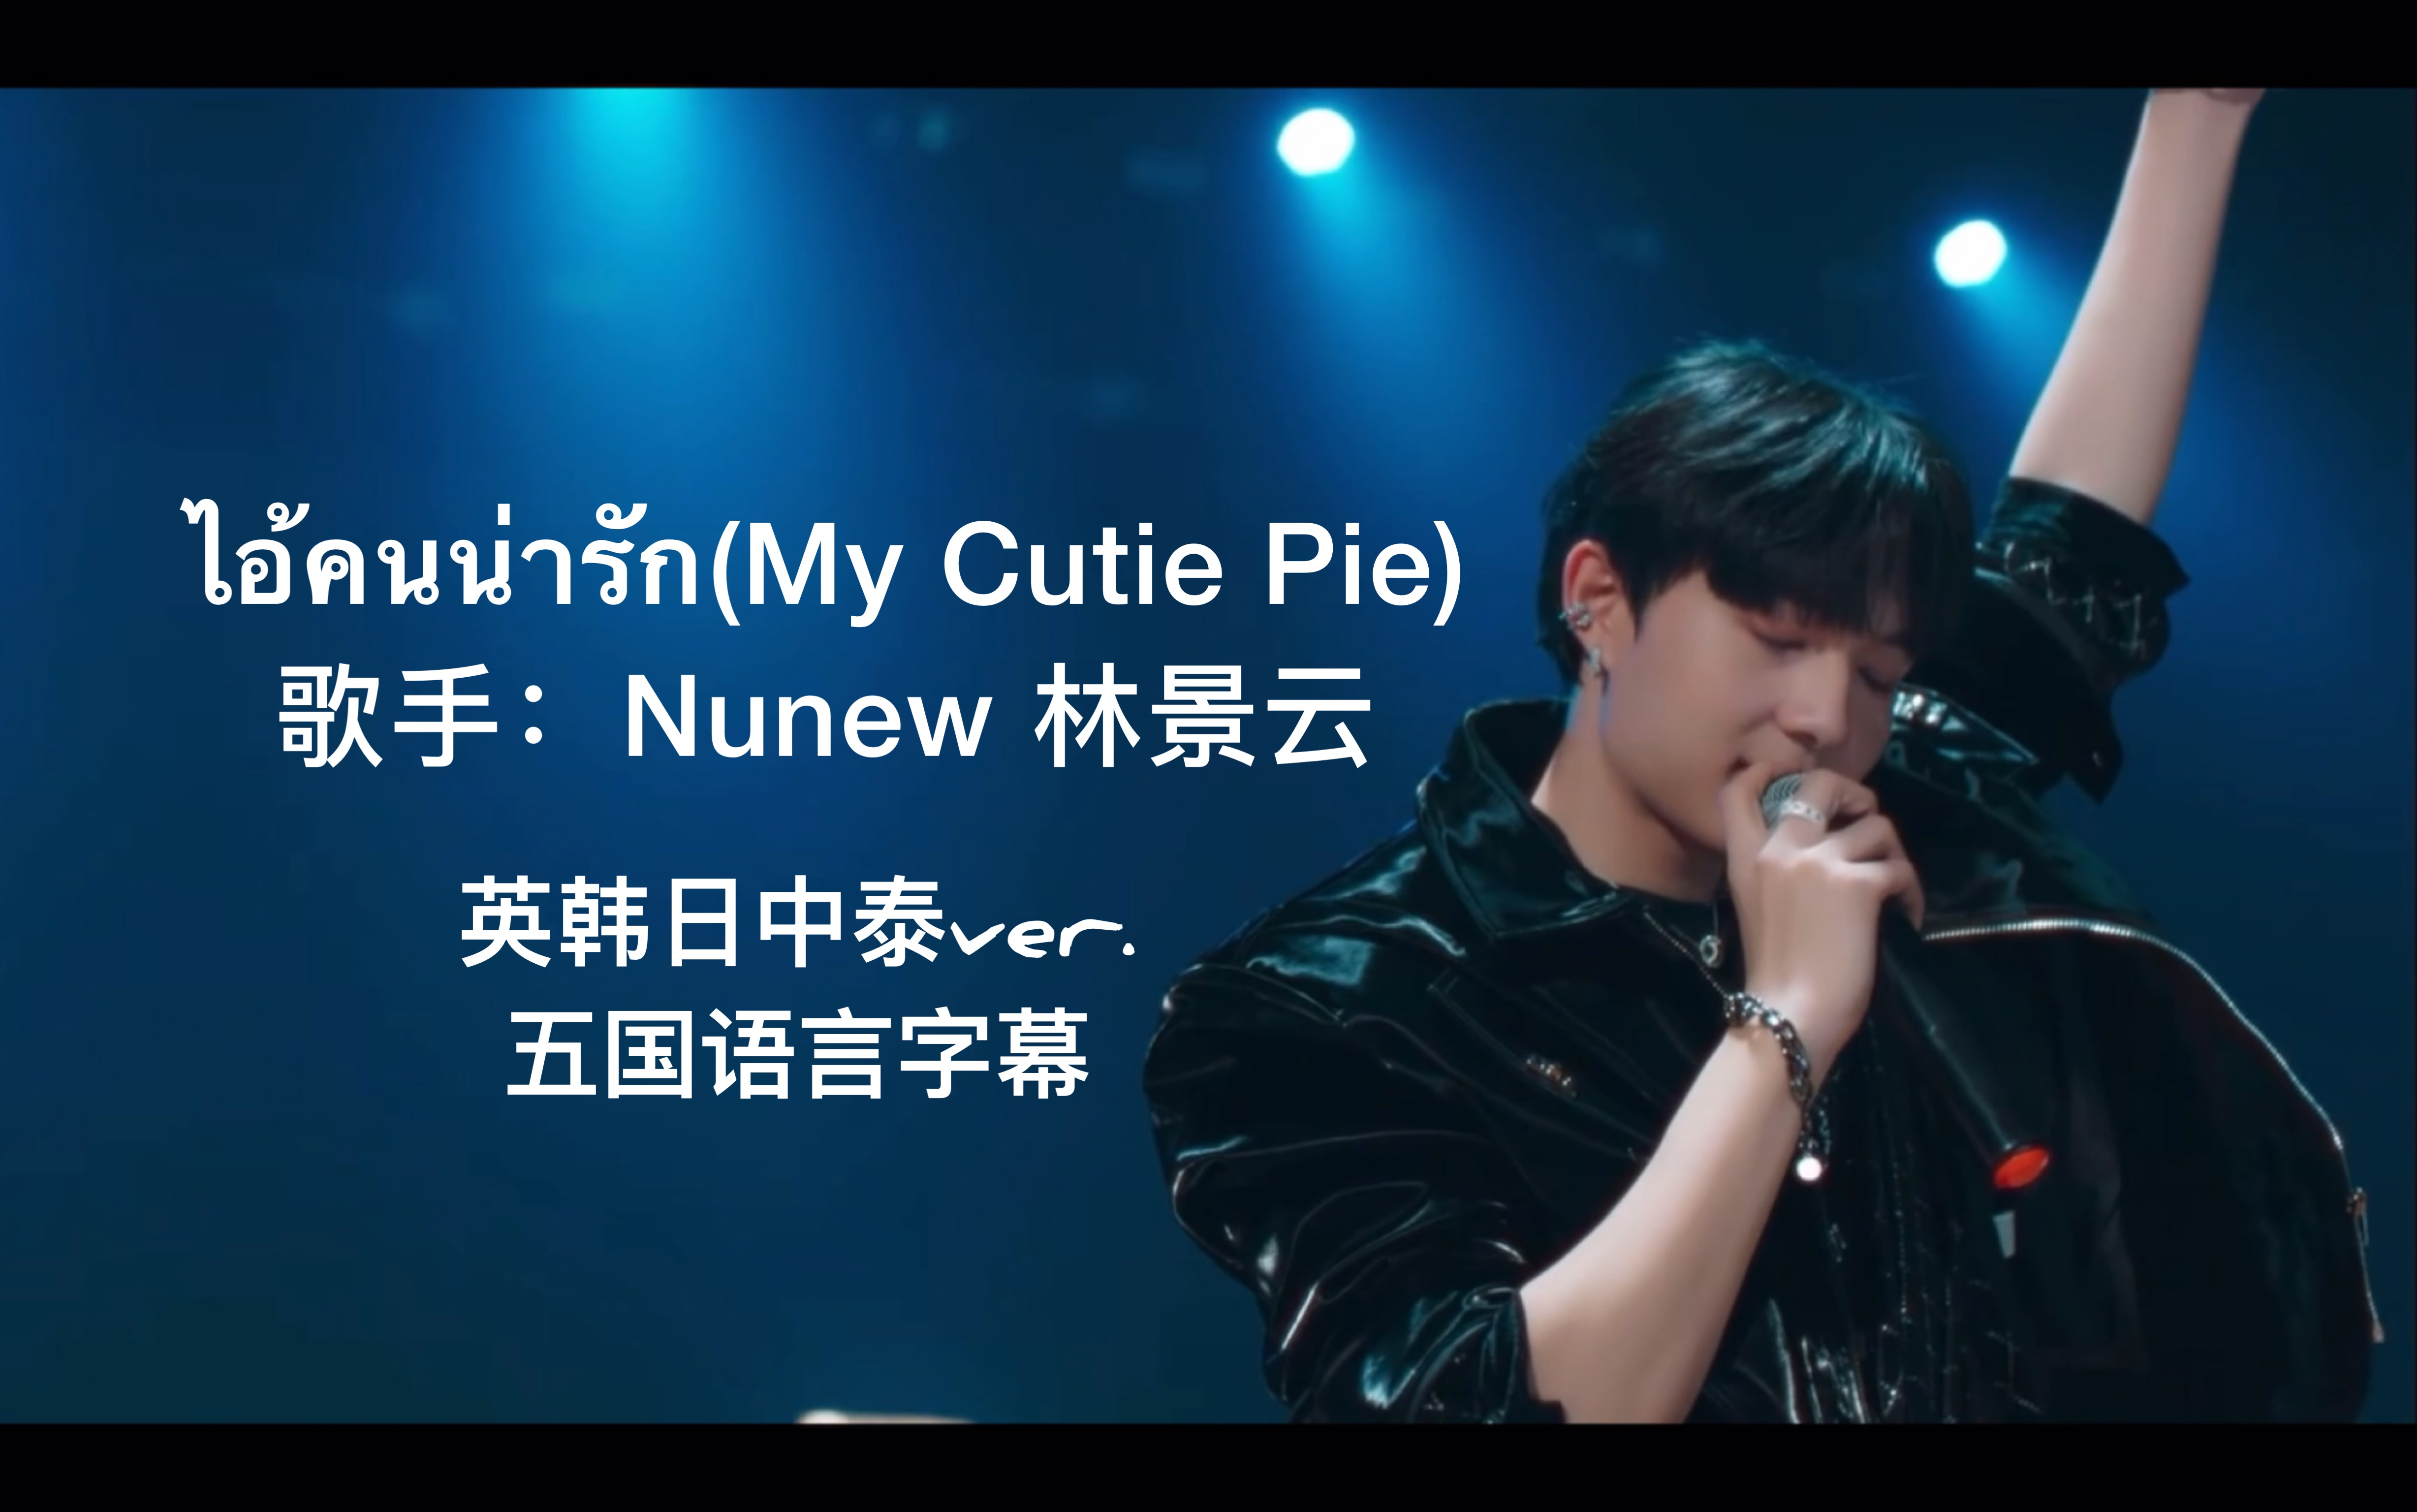 【甜心派番外】[五国语言字幕]My Cutie Pie - 林景云Nunew (英韩日中泰字幕ver.)